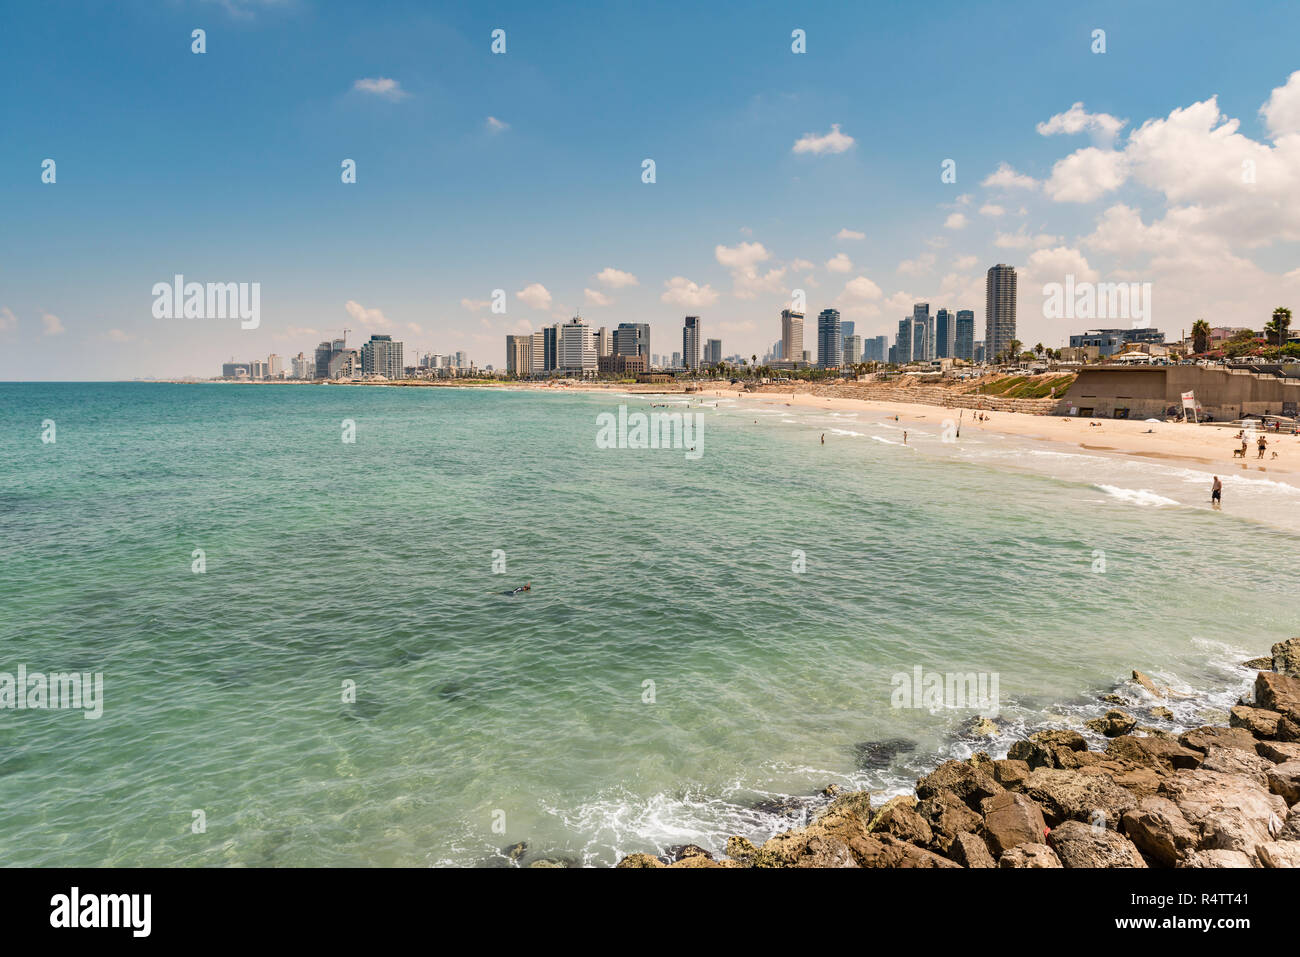 Les gens sur la plage, plage d'Alma, vue sur des toits de gratte-ciel, avec Tel Aviv Tel Aviv, Israël Banque D'Images